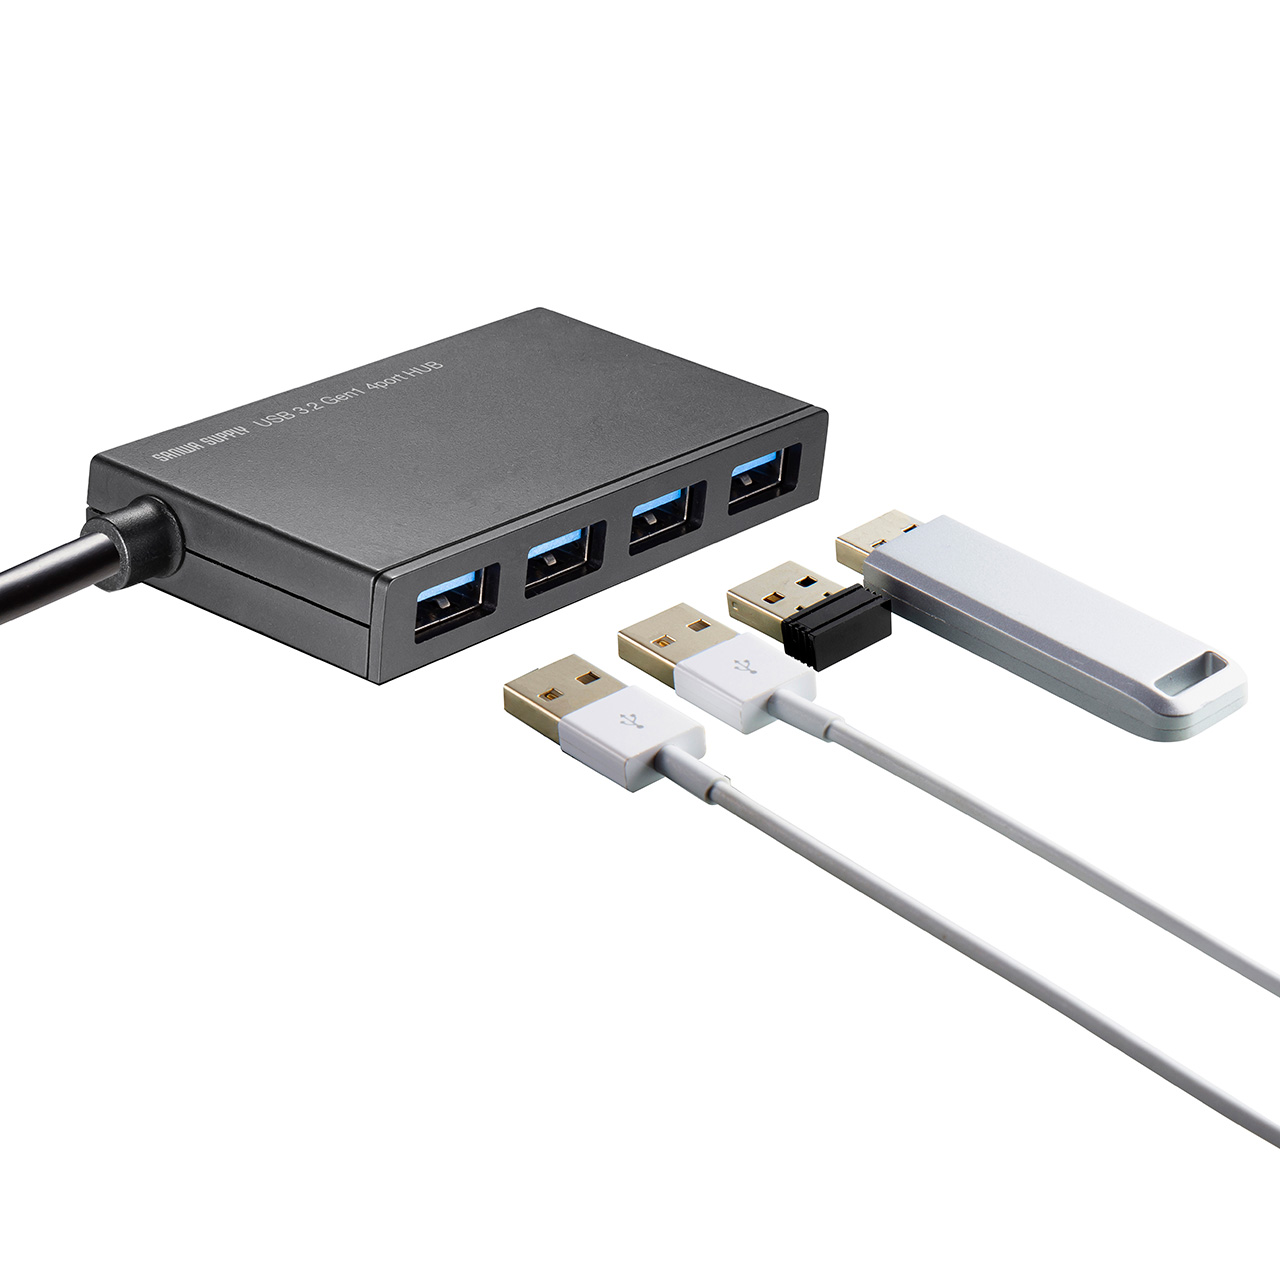 【ビジネス応援セール】USBハブ 4ポート Type-C ケーブル長1m バスパワー 薄型 軽量 コンパクト 高速データ転送 5Gbps 400-HUBC098